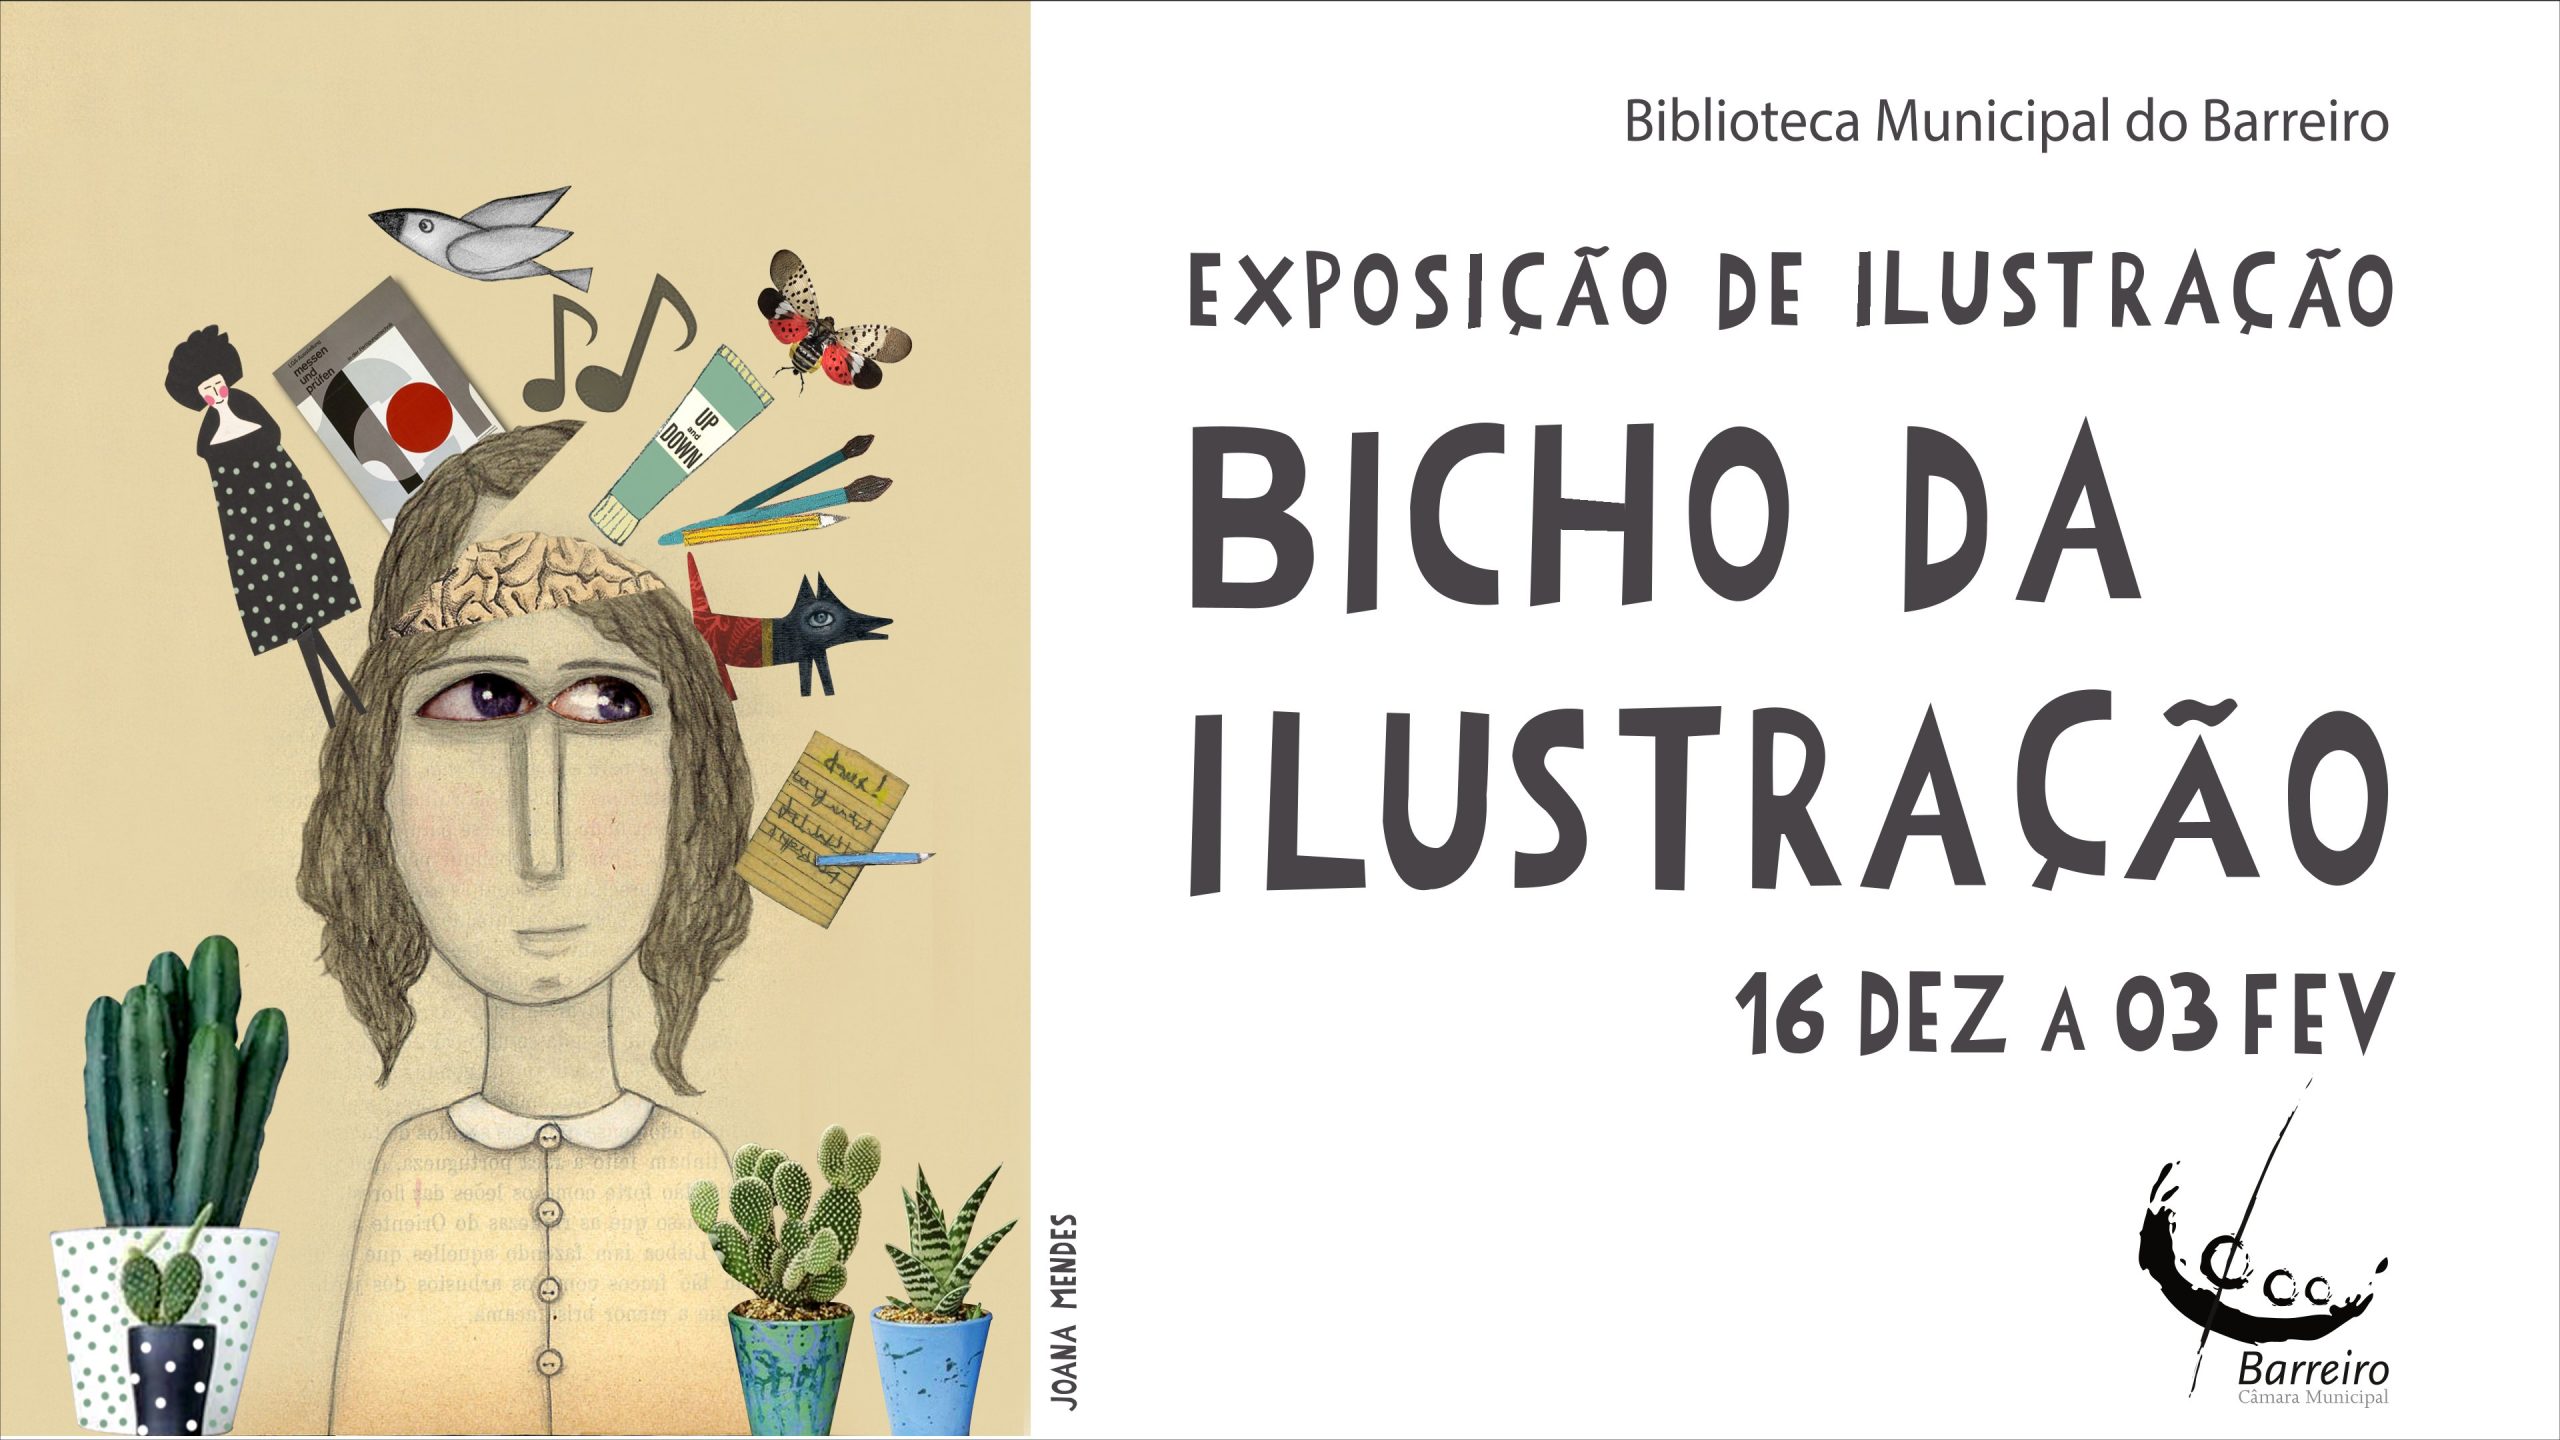 1920x1080 px_Expo Bicho da Ilustracao_Joana Mendes